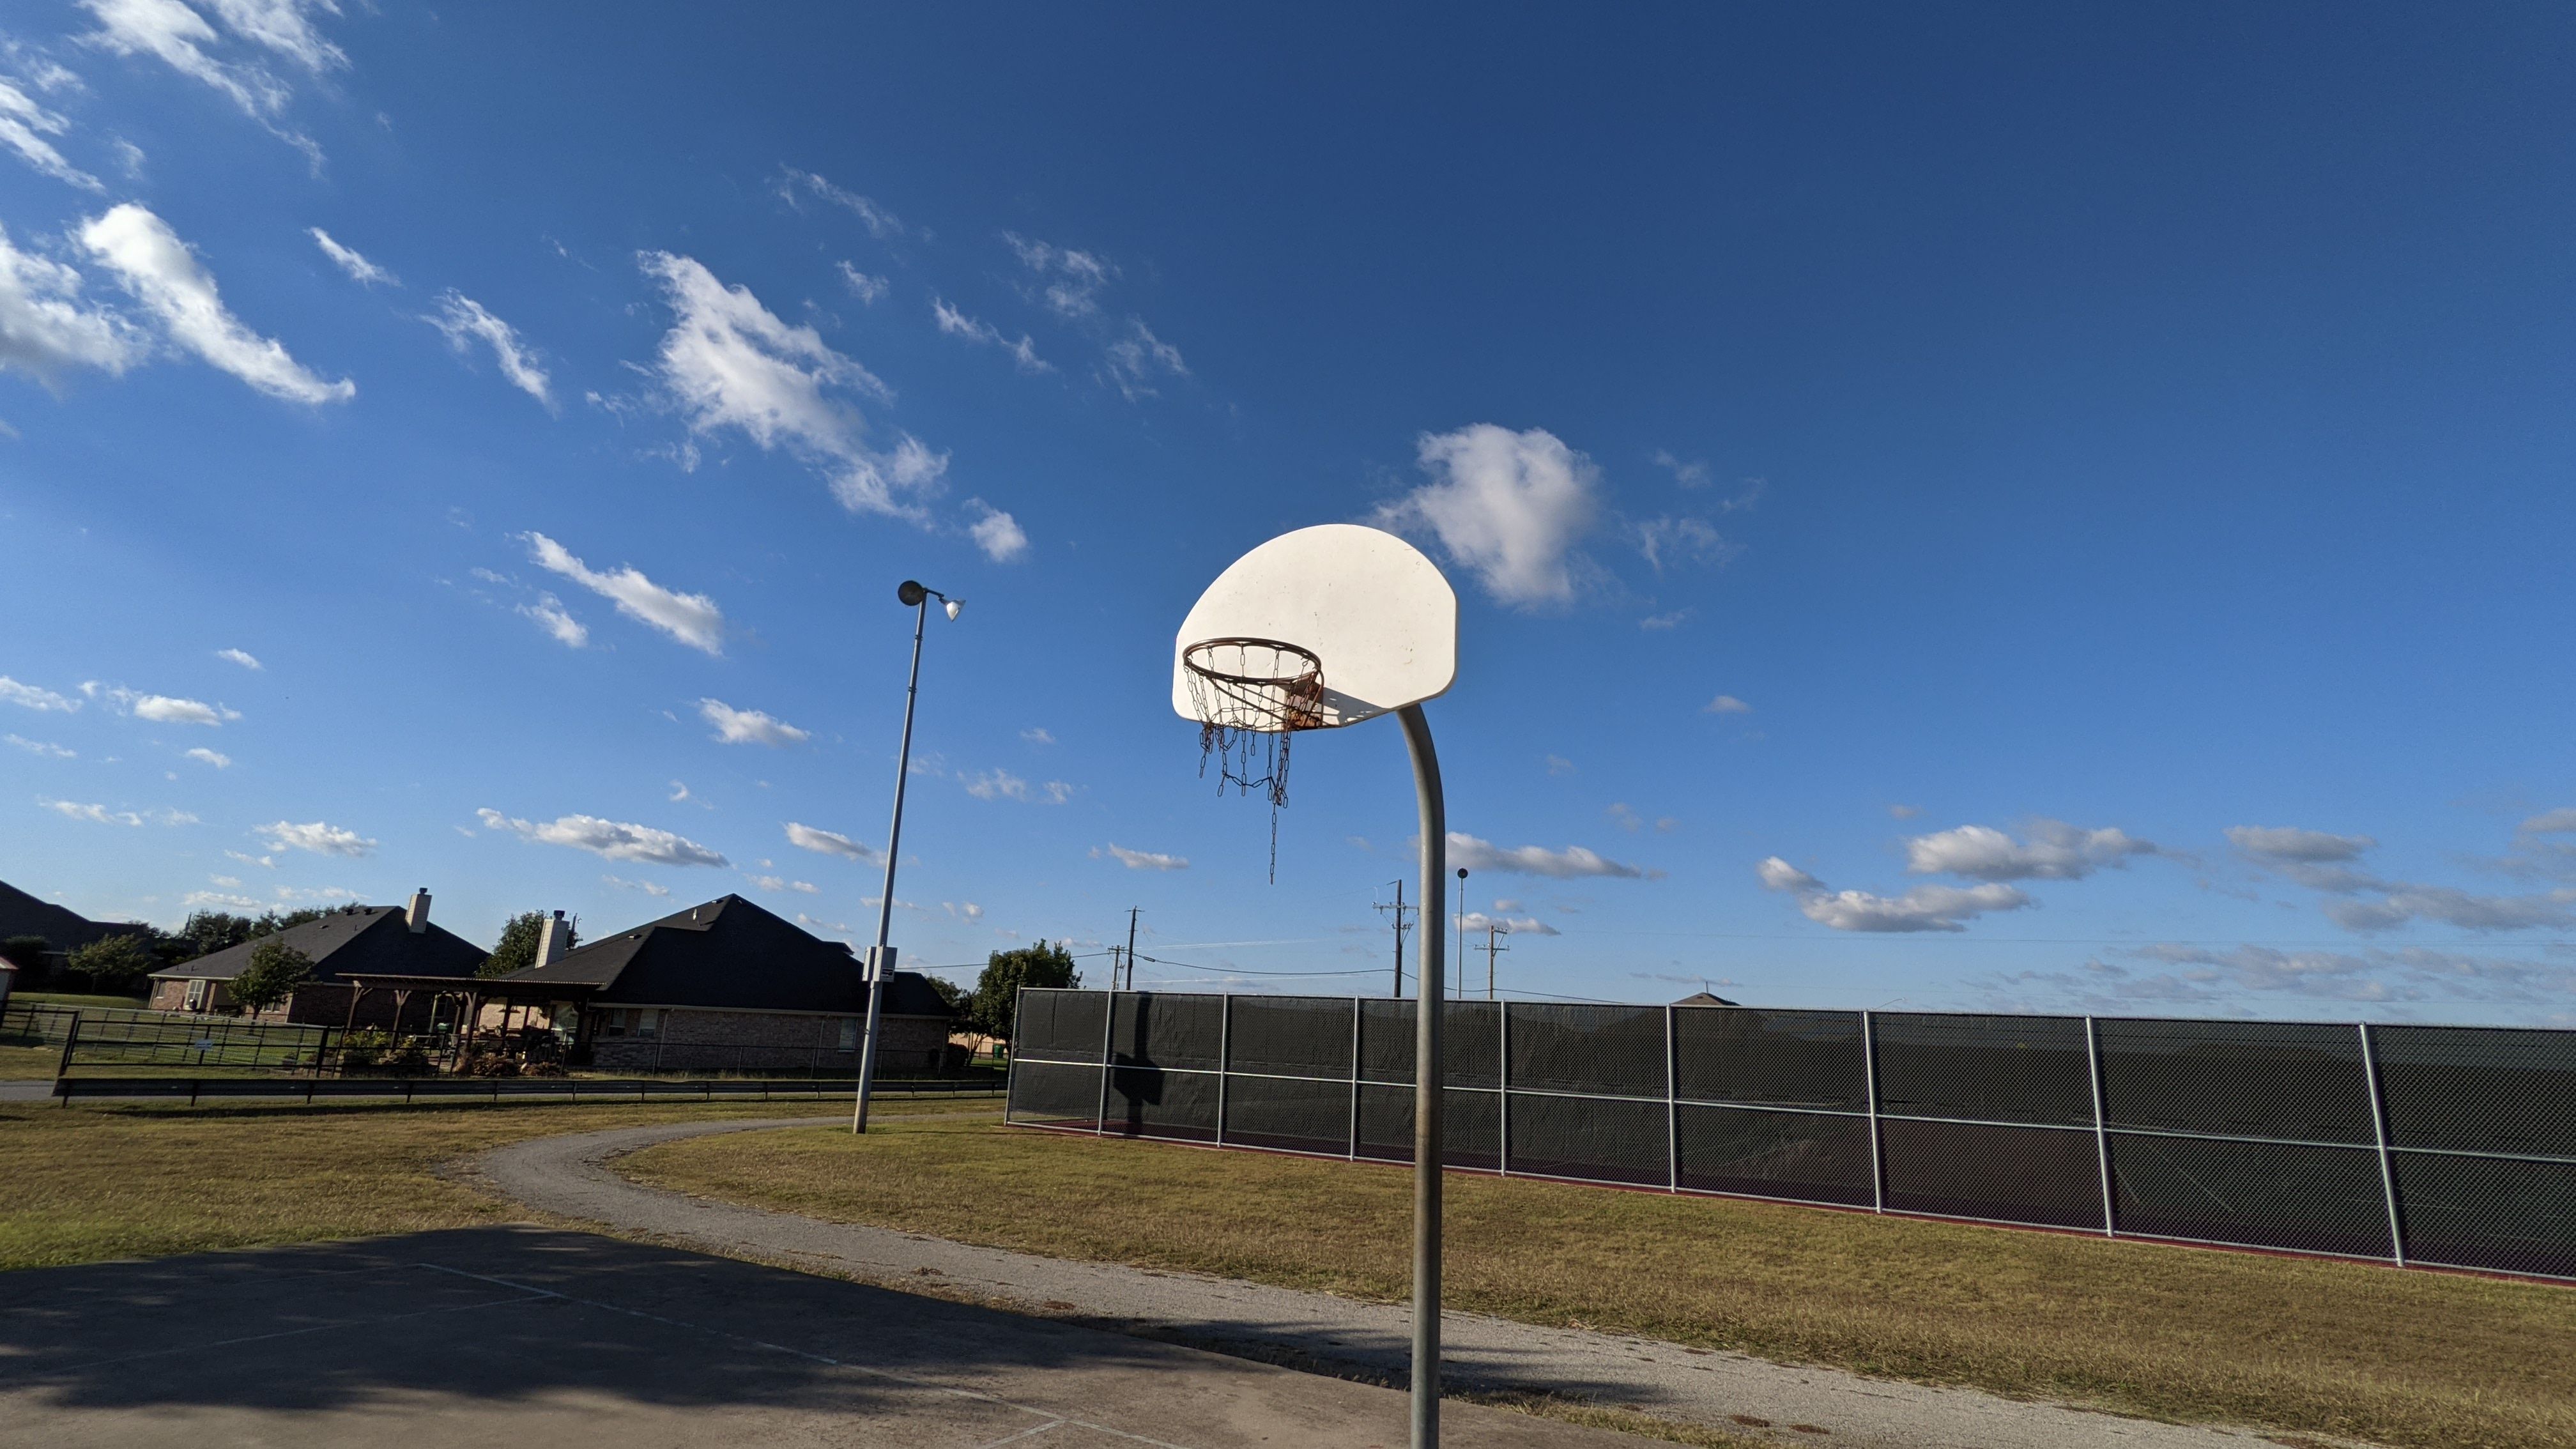 Pixel 4a 5G camera shots: basketball hoop